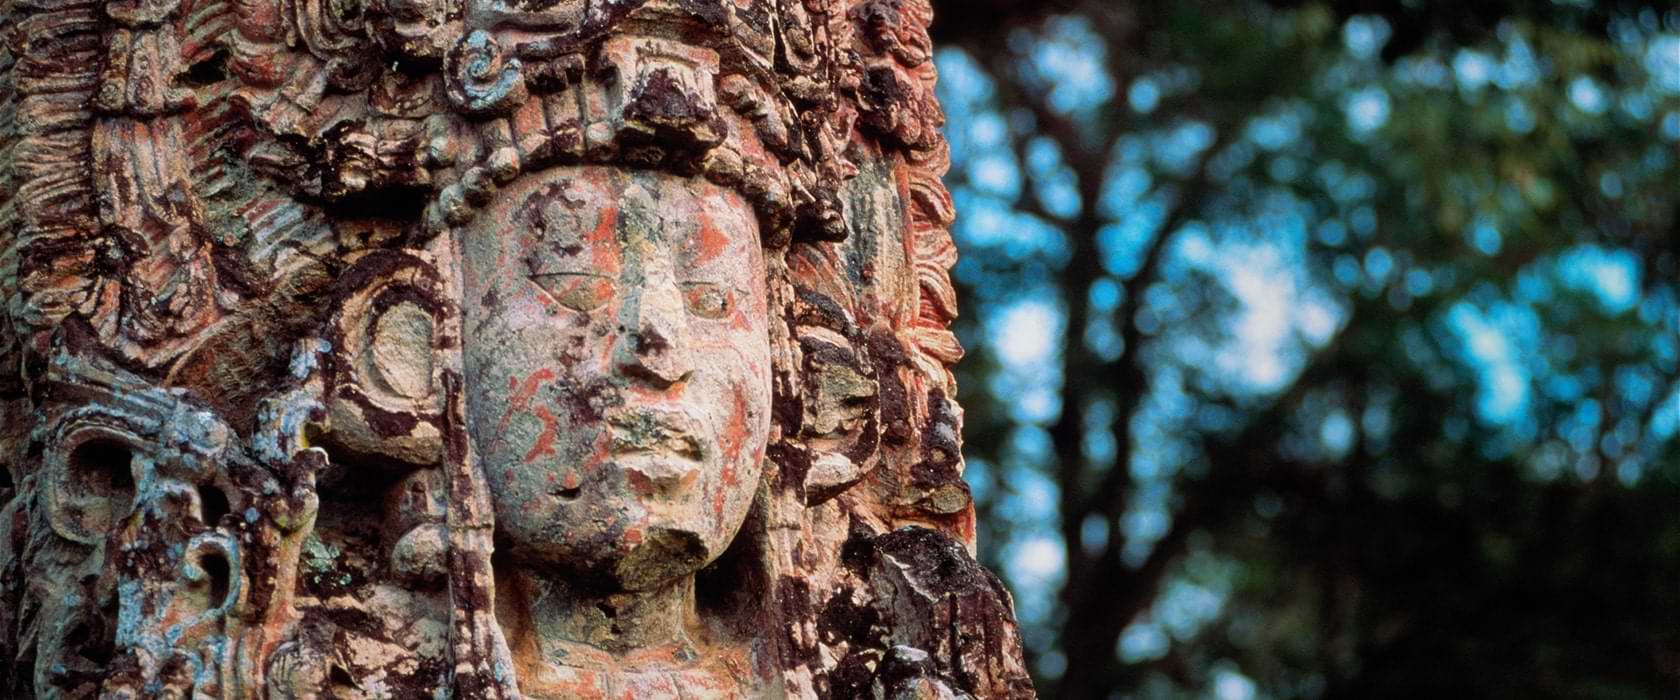 Rostro indígena tallado en árbol